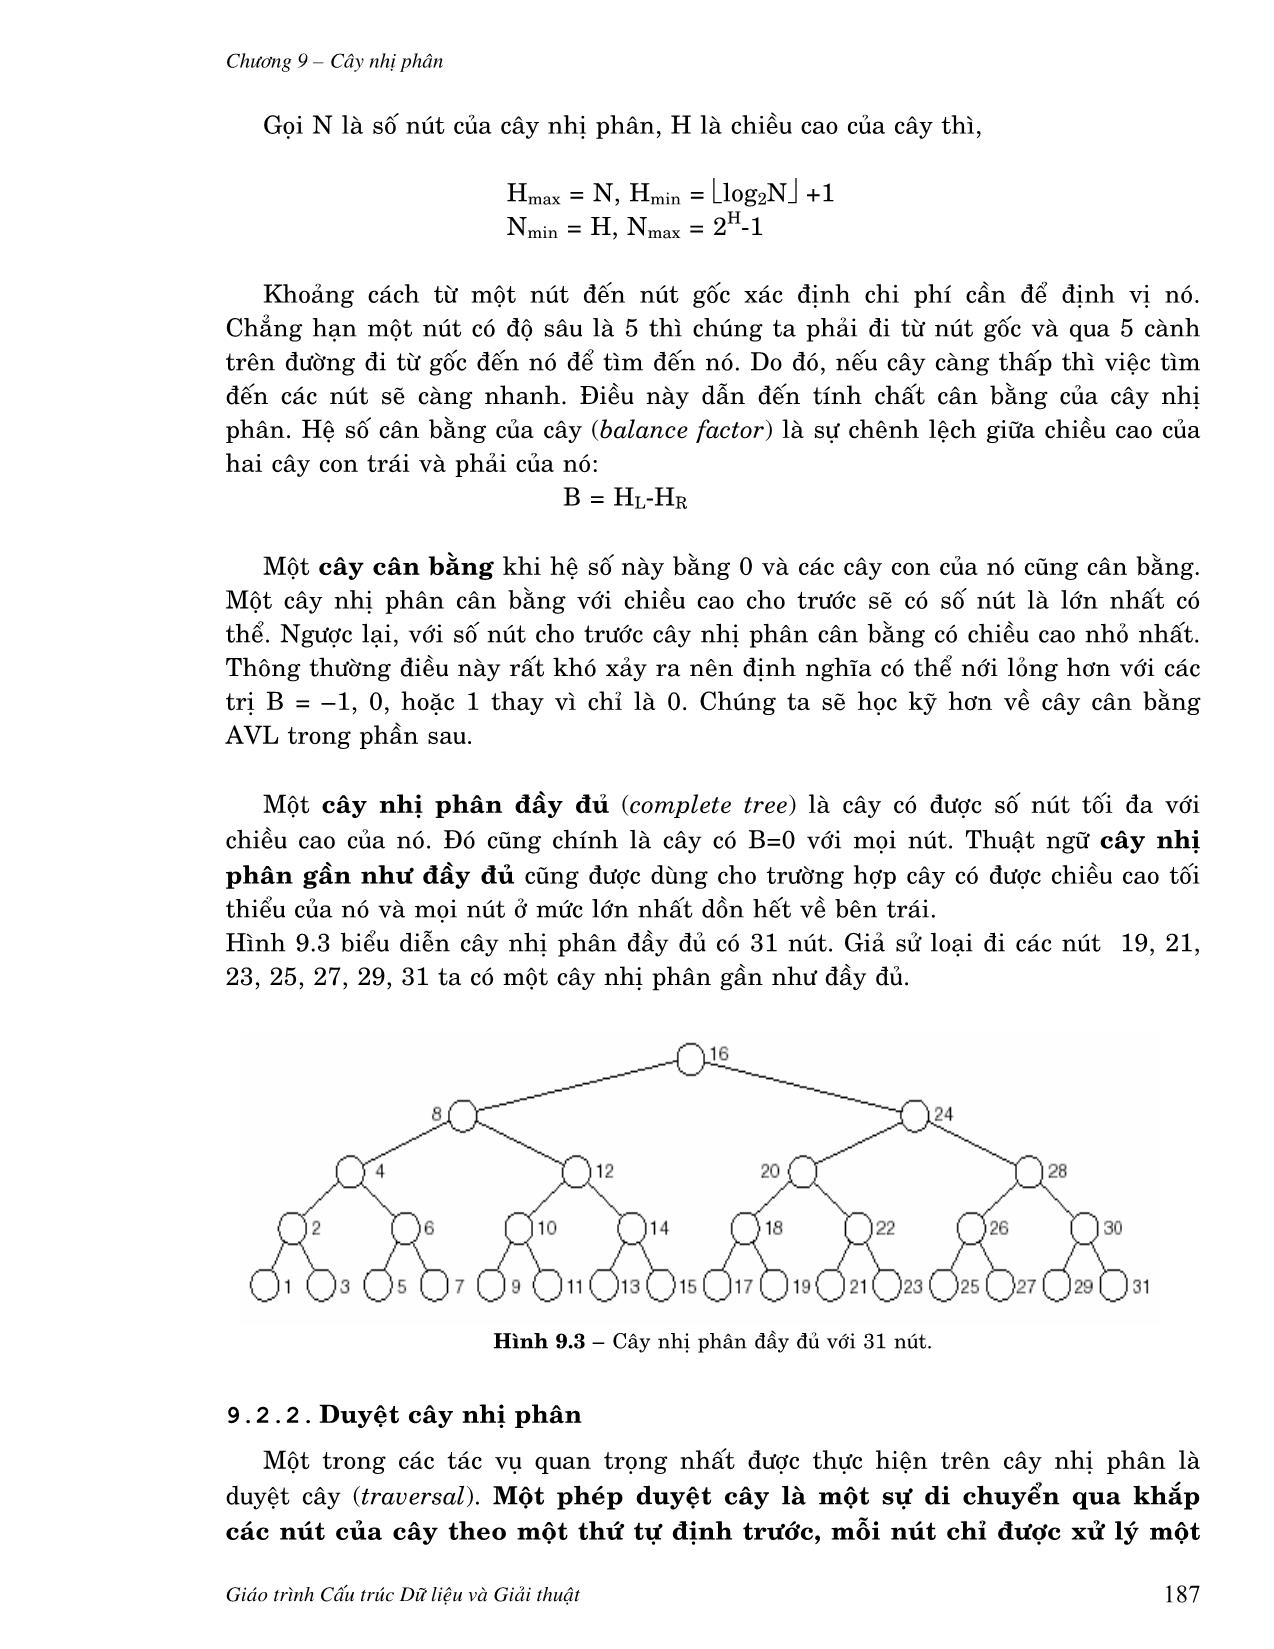 Giáo trình Cấu trúc dữ liệu và giải thuật căn bản (Phần 2) trang 5